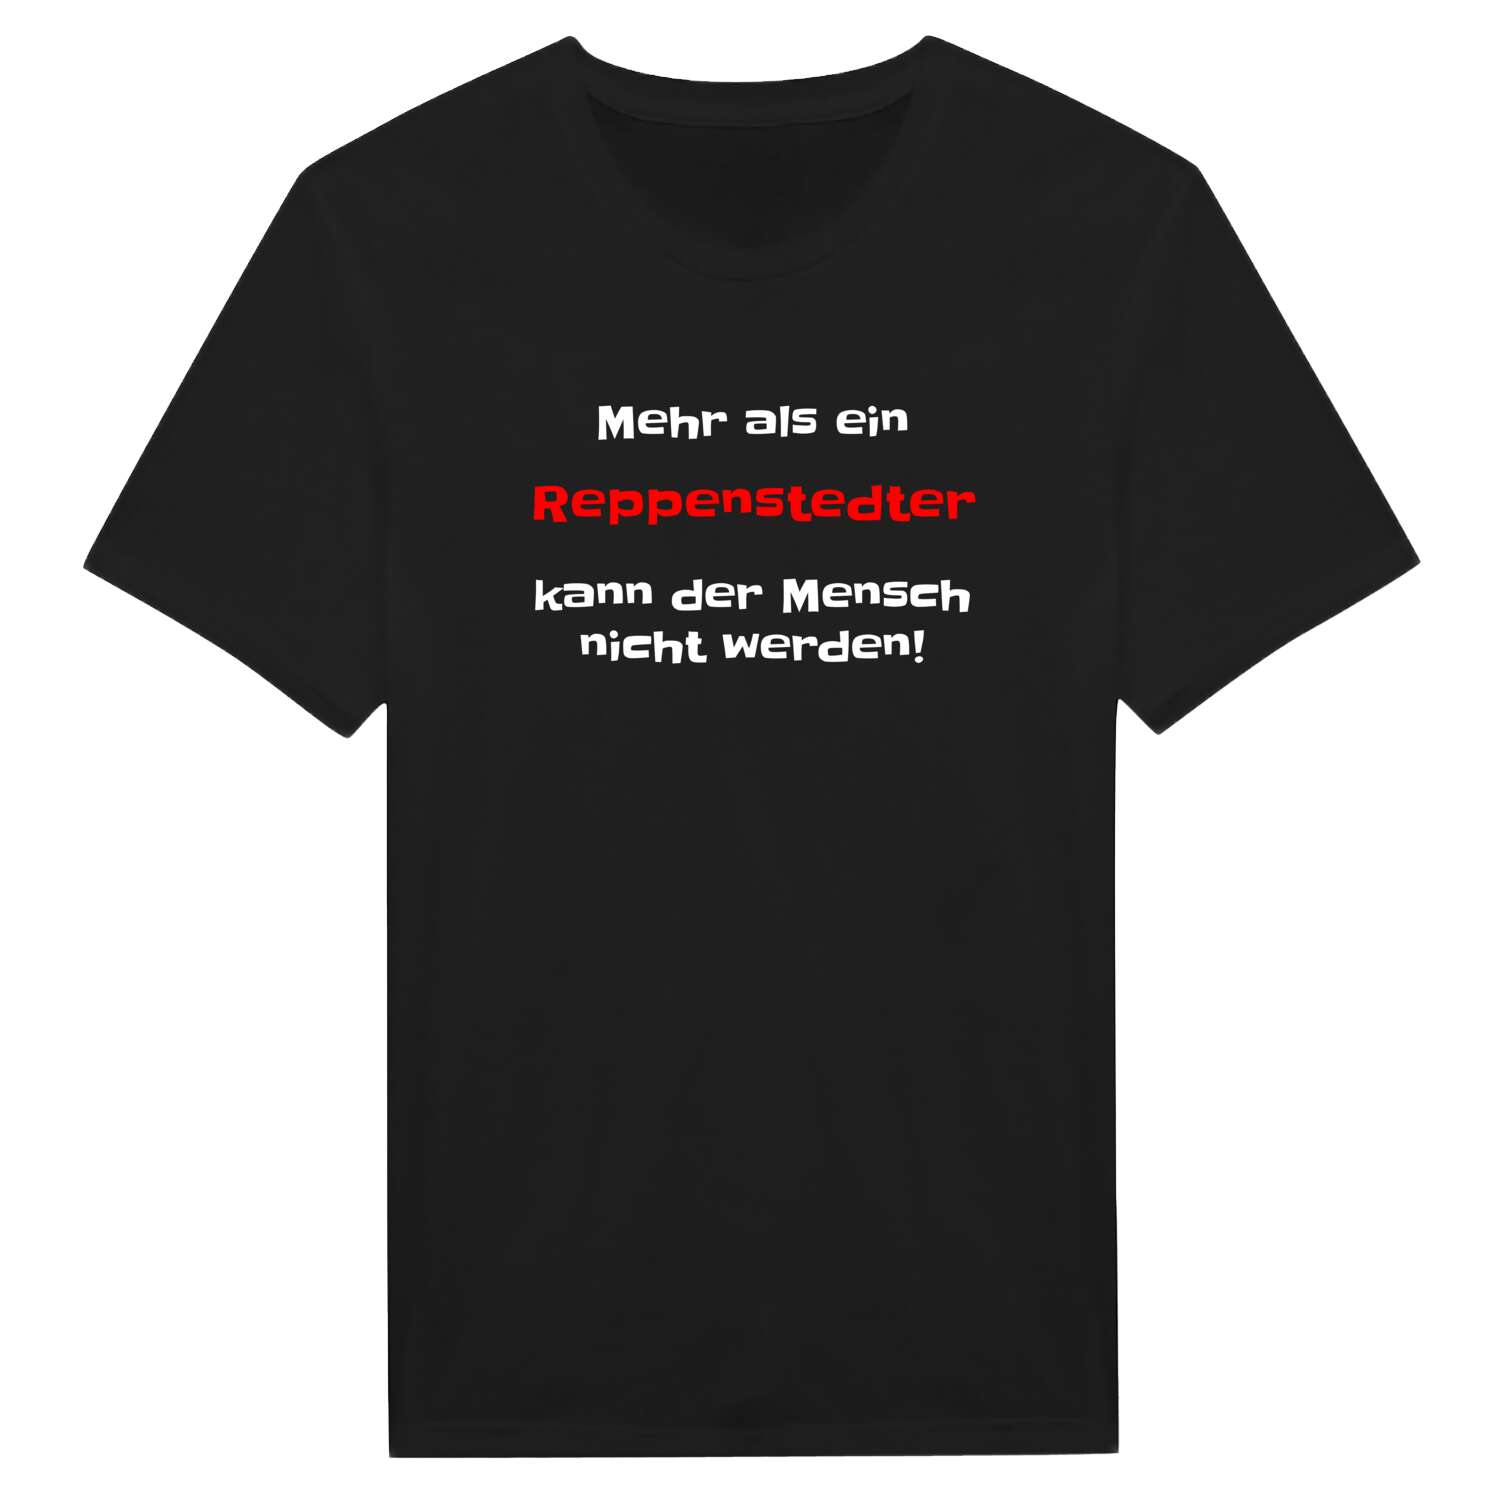 Reppenstedt T-Shirt »Mehr als ein«